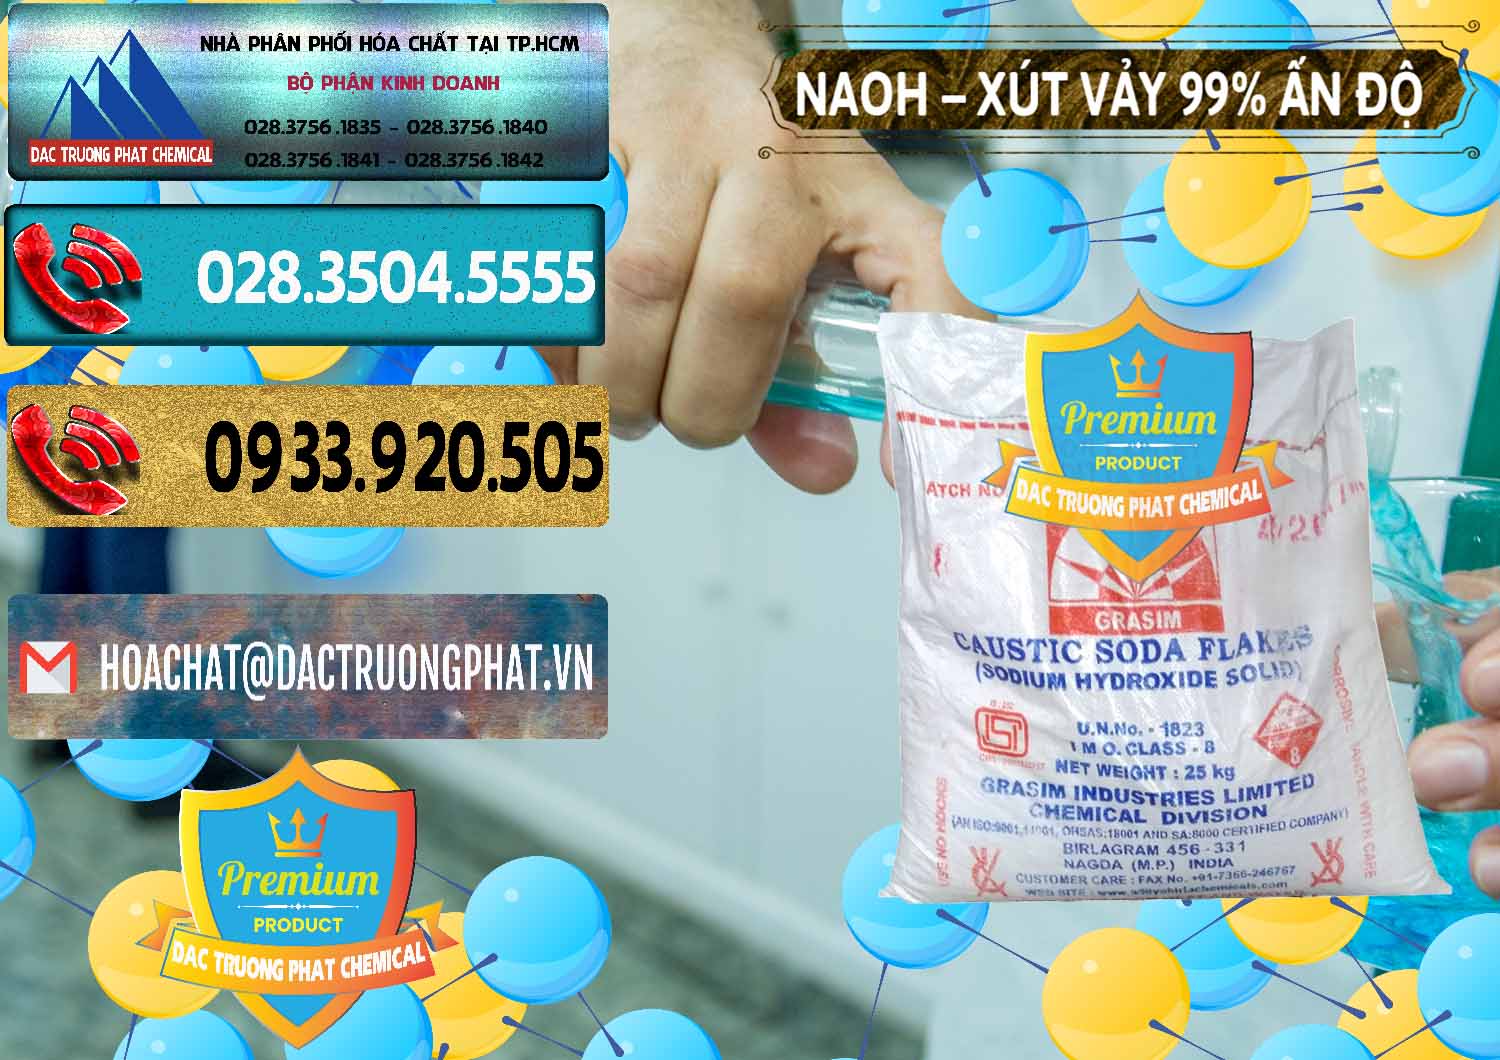 Nơi nhập khẩu _ bán Xút Vảy - NaOH Vảy 99% Aditya Birla Grasim Ấn Độ India - 0171 - Cung cấp & phân phối hóa chất tại TP.HCM - hoachatdetnhuom.com